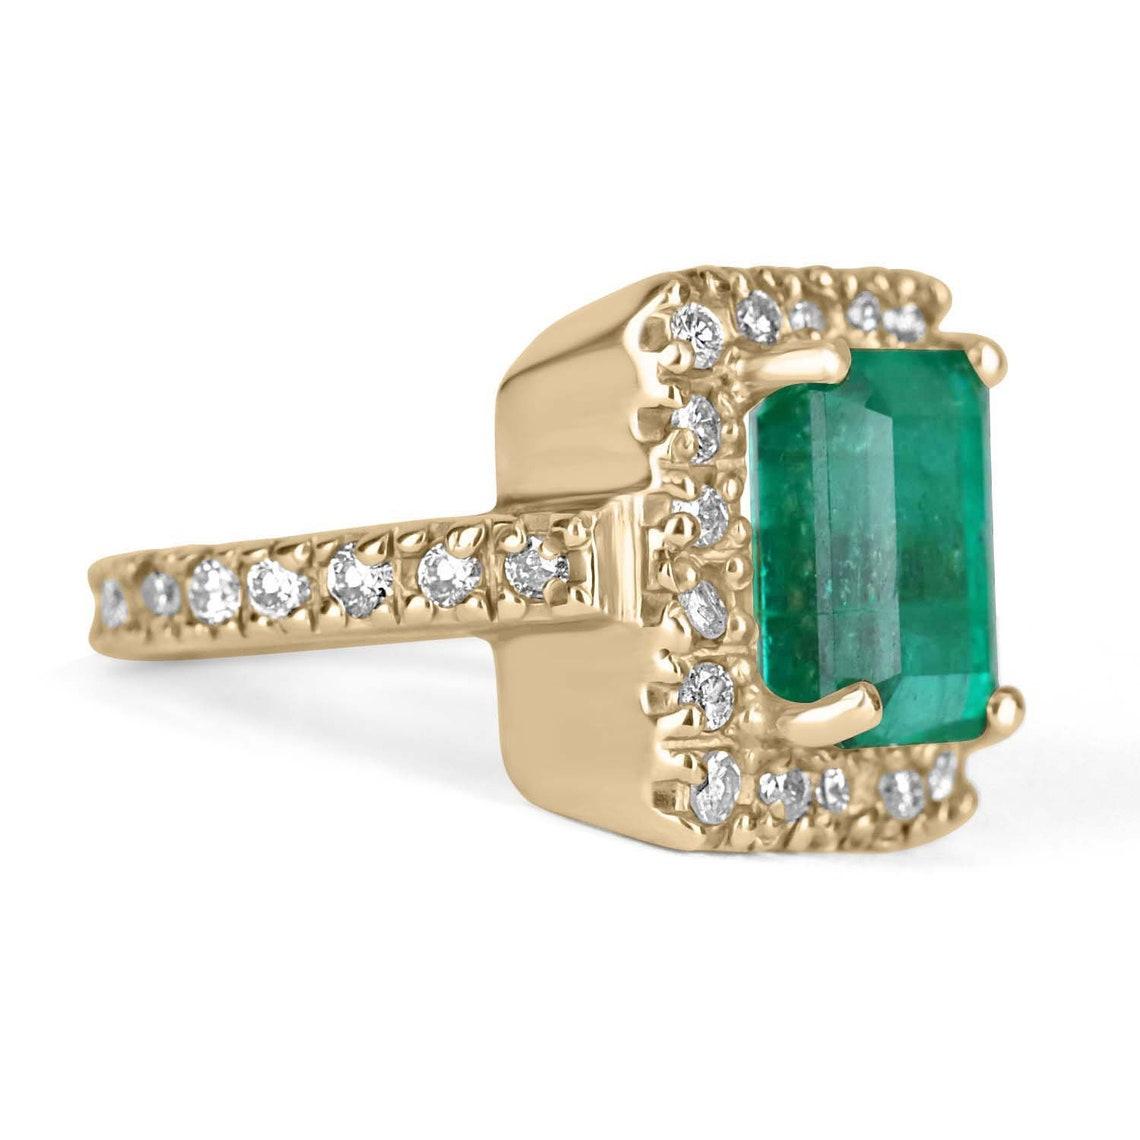 Ausgestellt ist ein Vintage kolumbianischen Smaragd und Diamant Halo-Ring. Der zentrale Edelstein ist ein Smaragd mit Smaragdschliff, der vor Leben und Brillanz strotzt! Zu den beeindruckenden Eigenschaften des Smaragds gehören seine lebhafte grüne